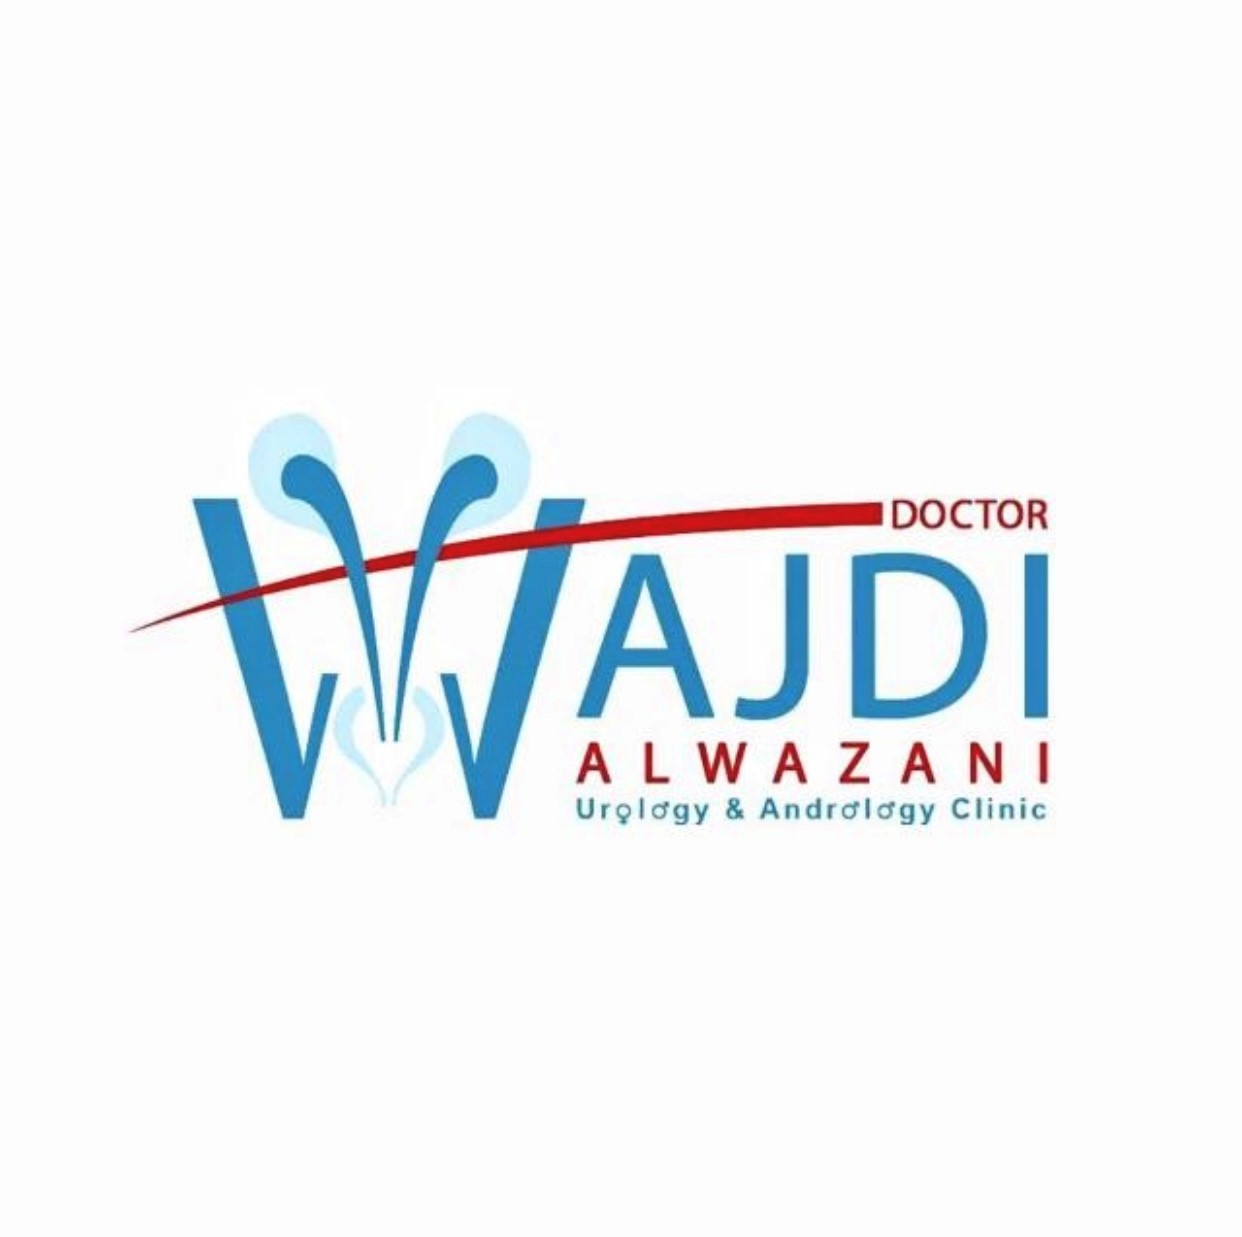 Dr wajdi al wazany